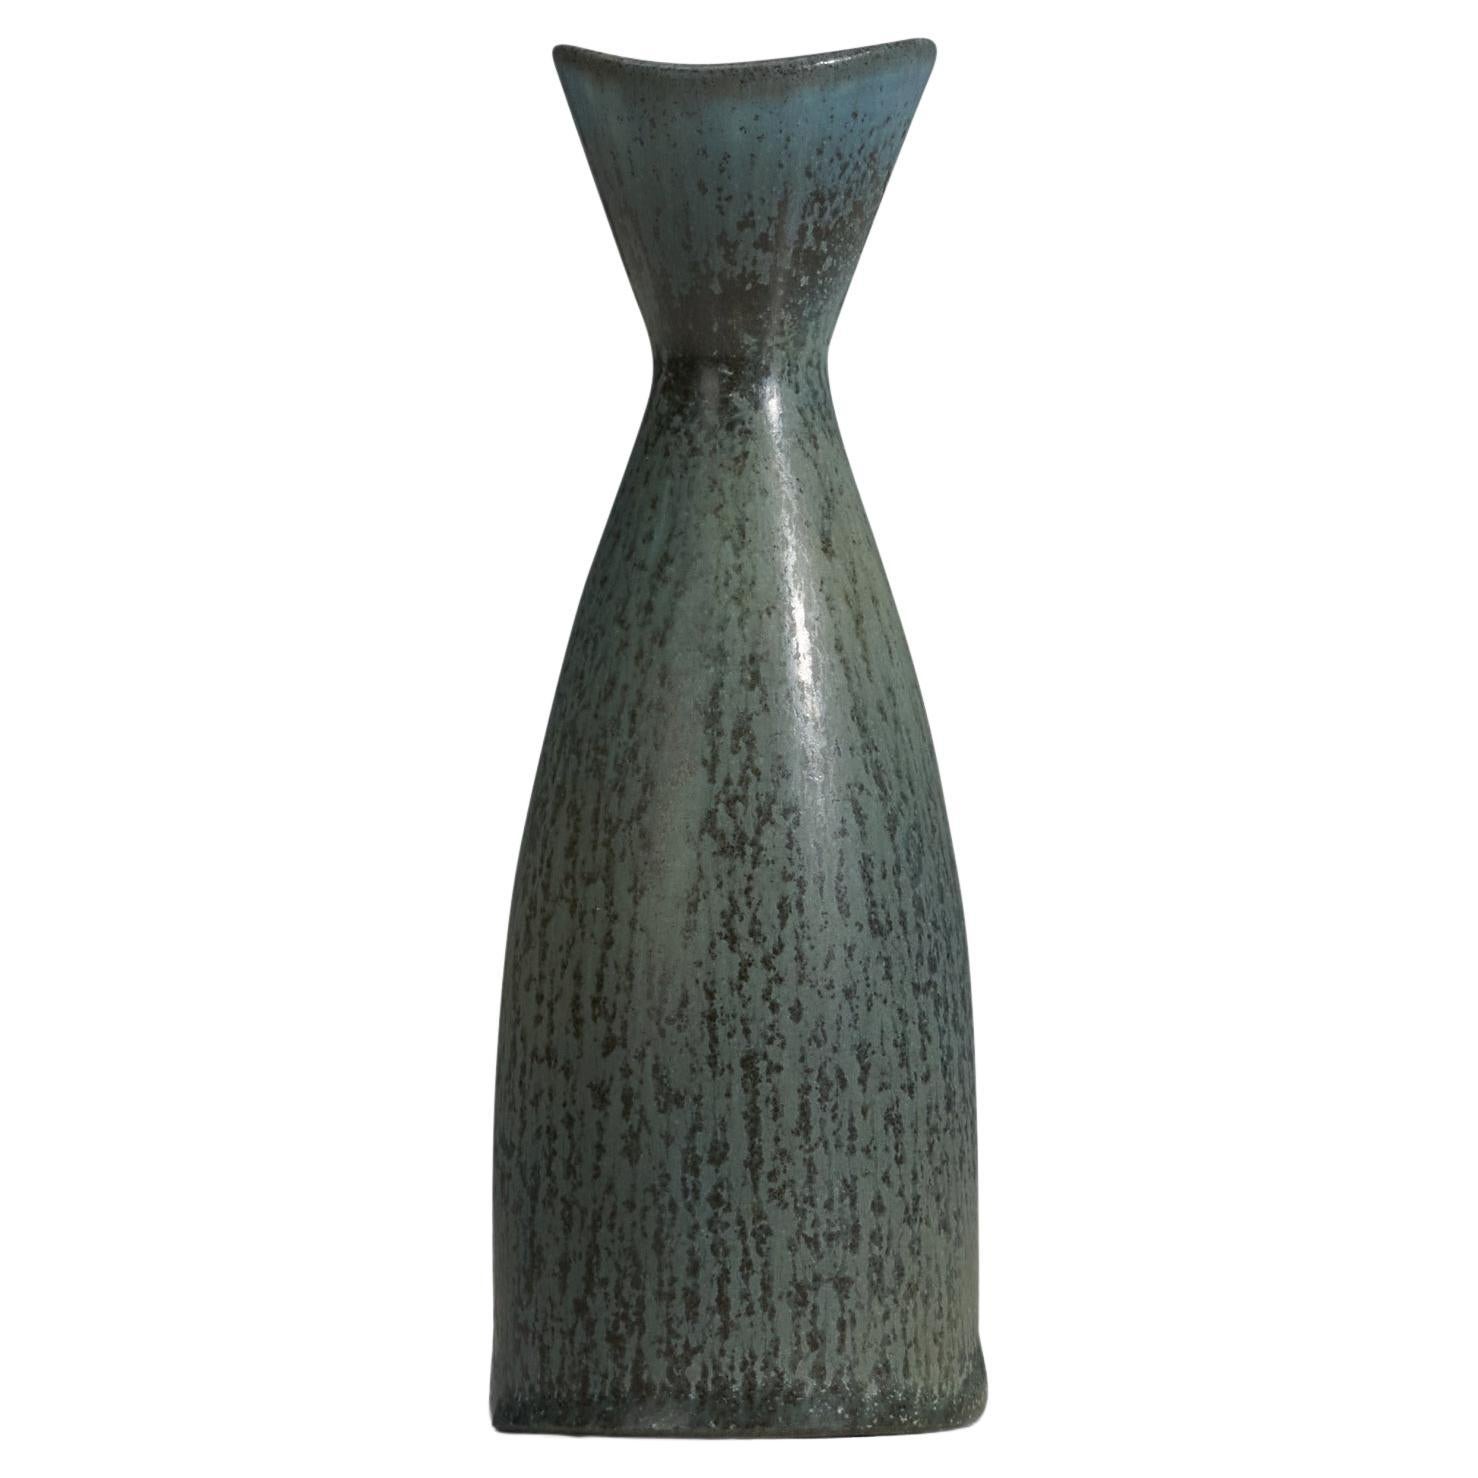 Carl-Harry Stålhane, Vase, Green Glazed Stoneware, Rörstrand, Sweden, 1960s